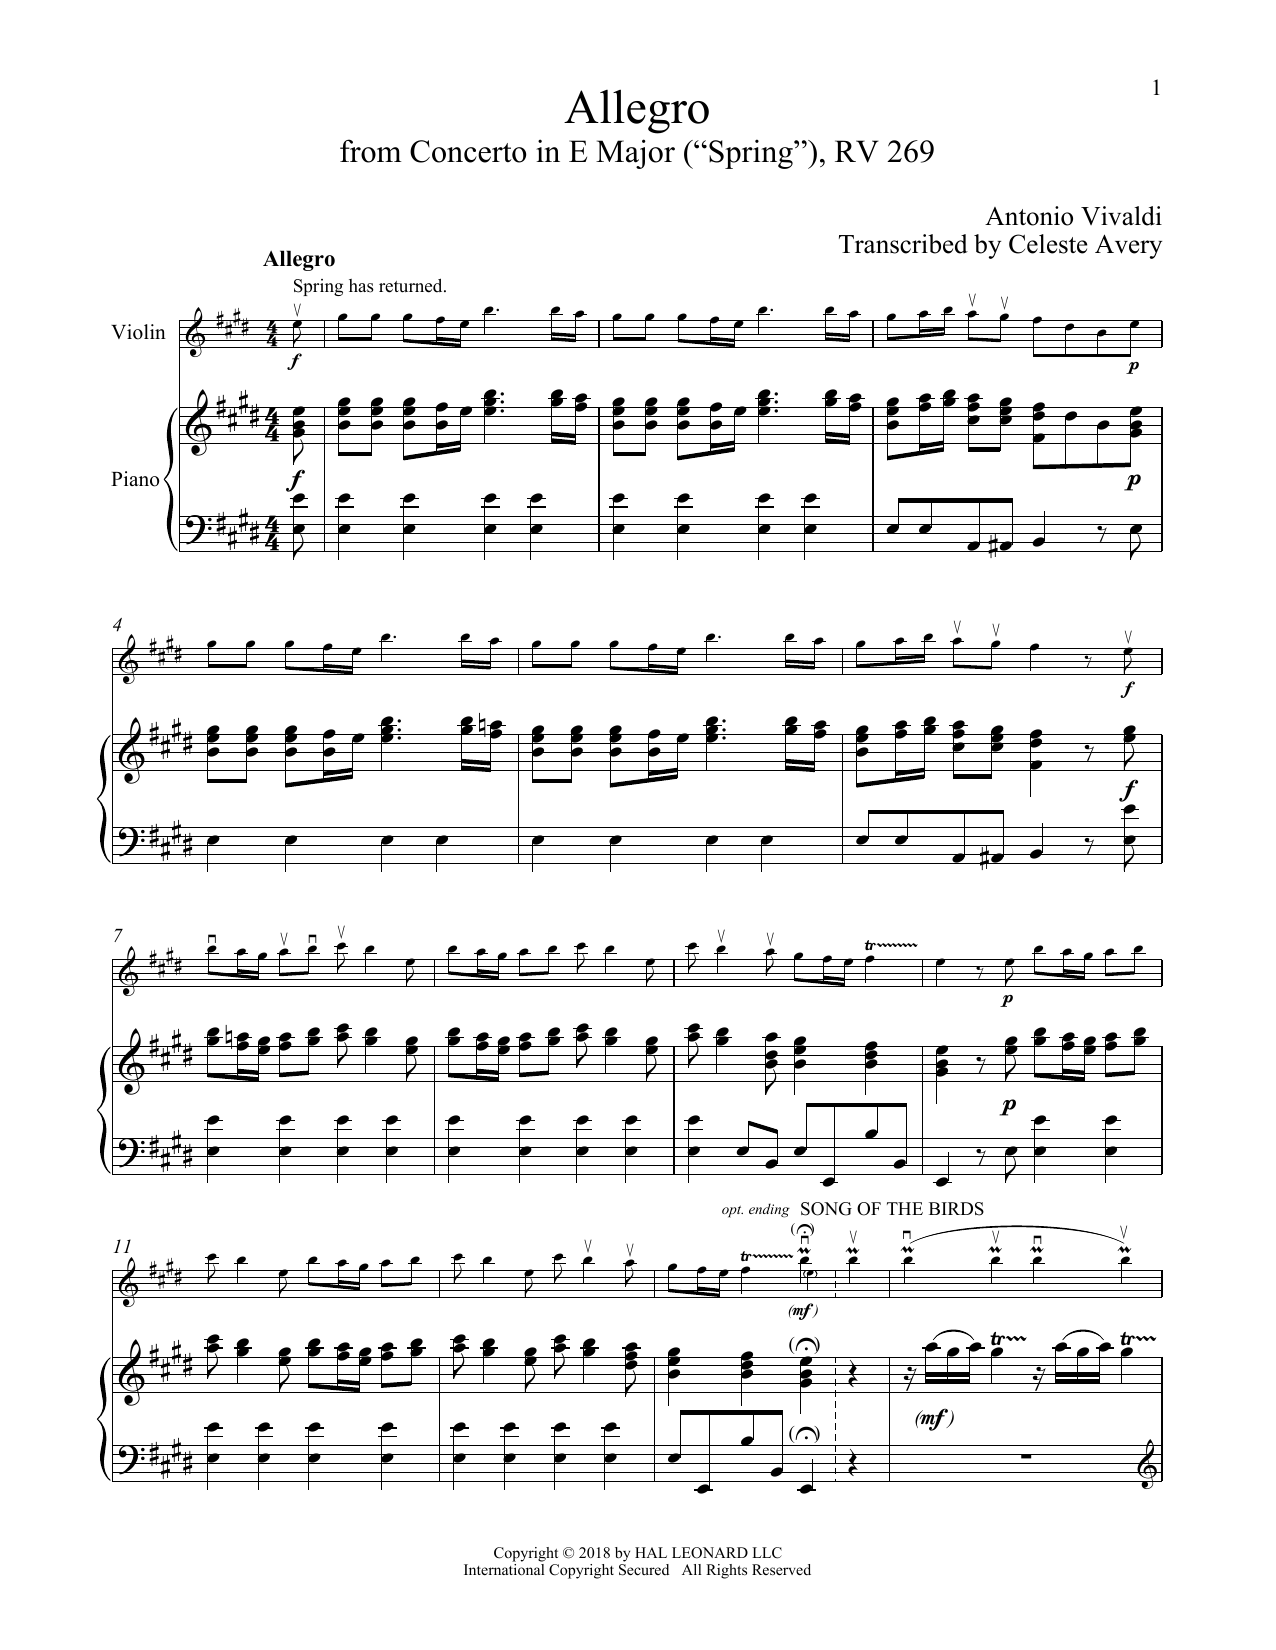 Download Antonio Vivaldi Allegro I, RV 269 (